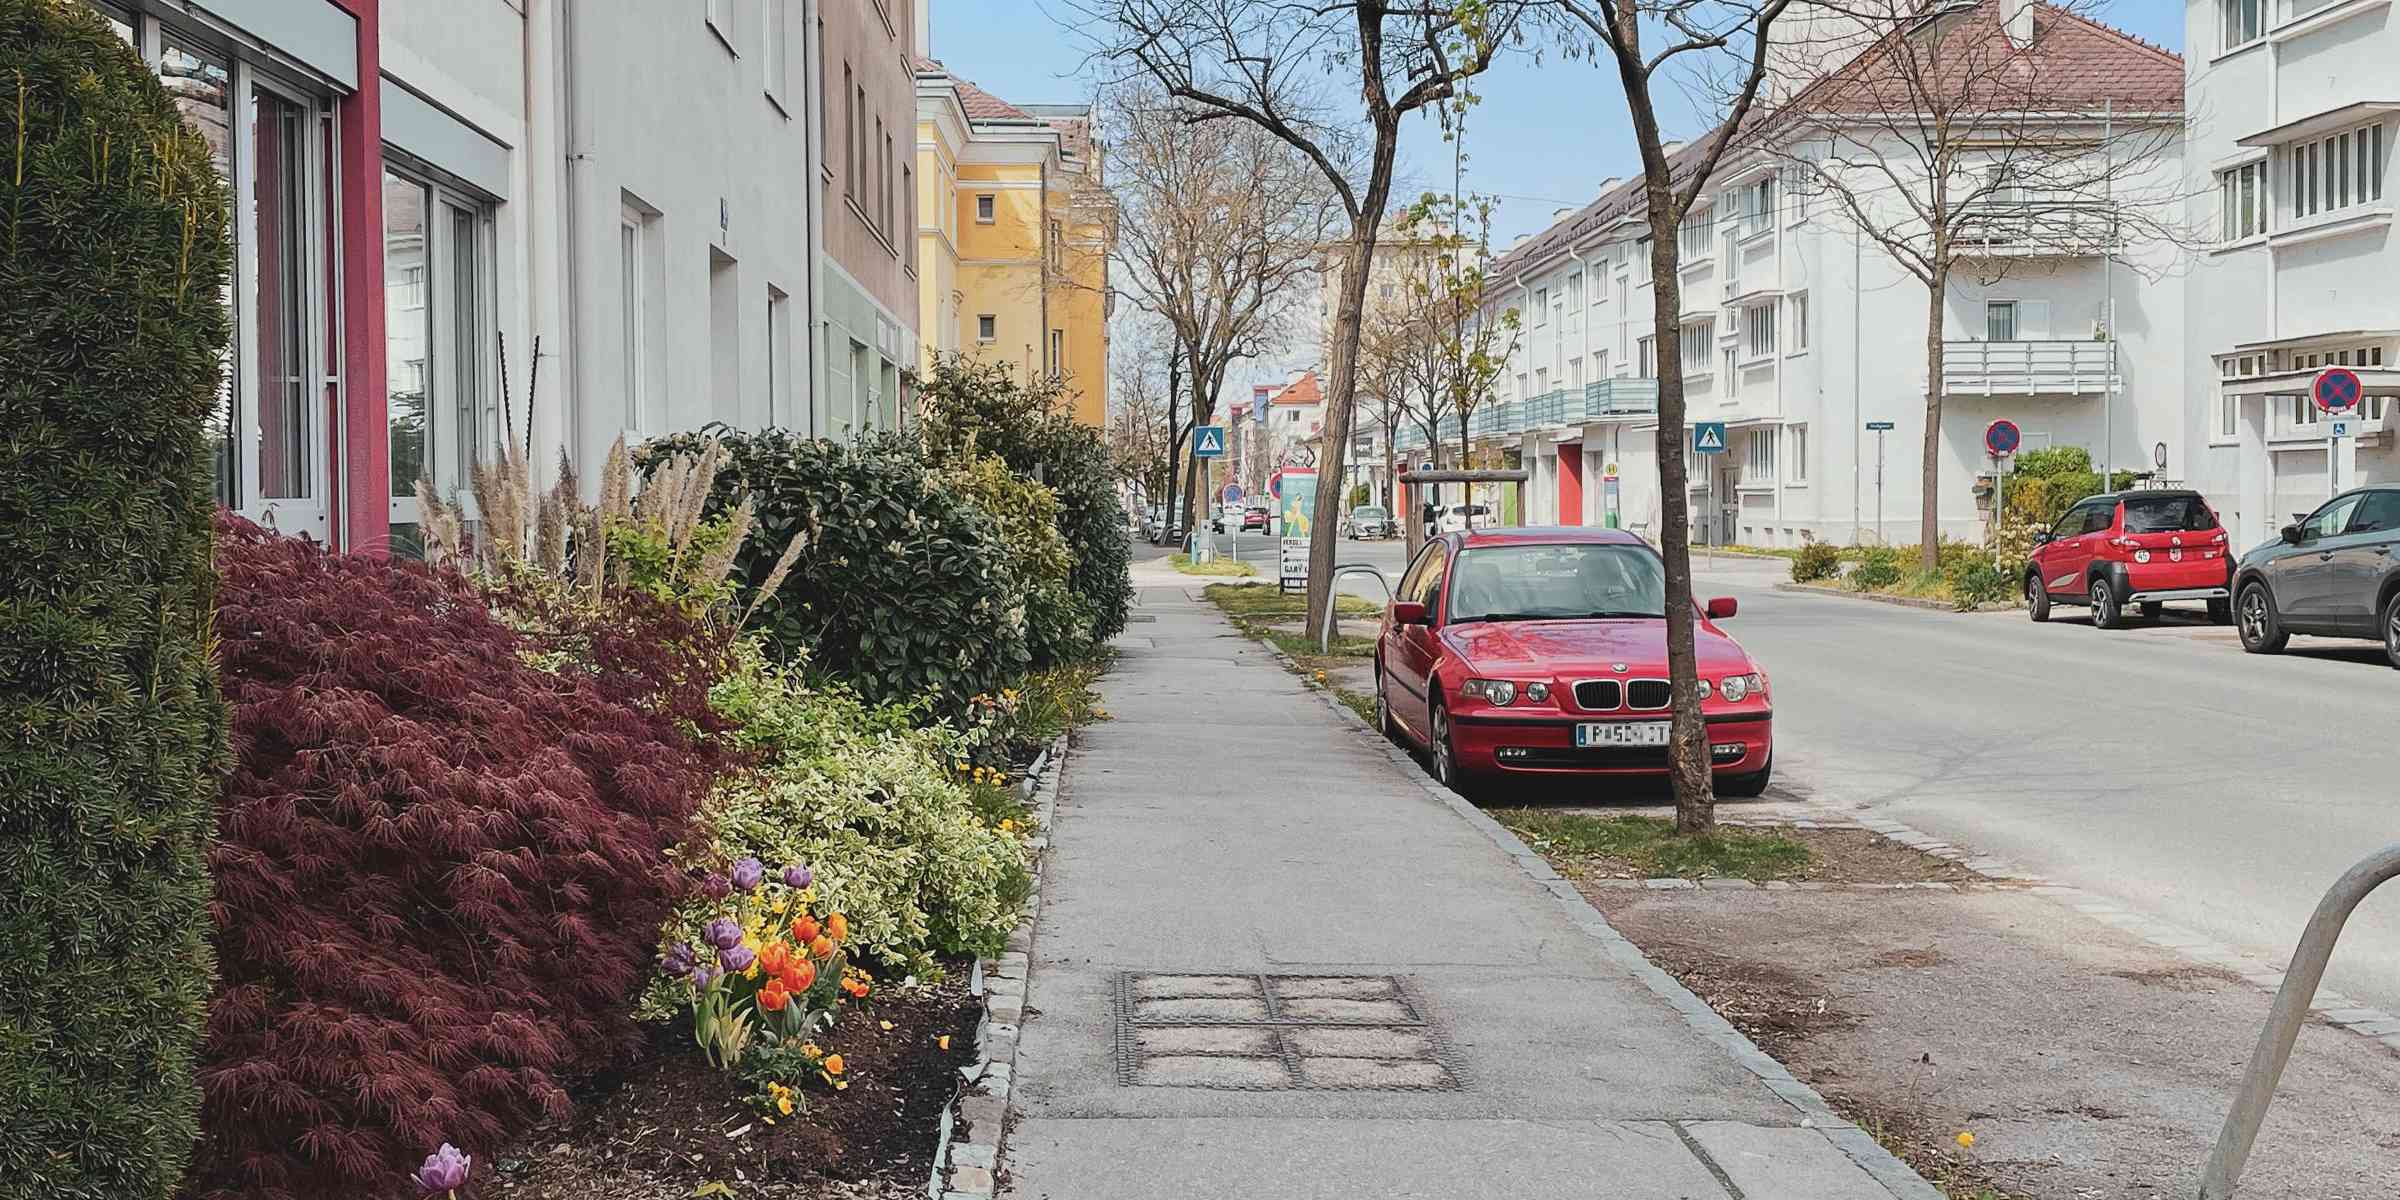 StPölten Josefstadt Blick stadtauswärts, Hecken und Tulpen auf schmalem Vorgarten zum Gehsteig. Auf der Straße stechen zwei rote Autos hervor.